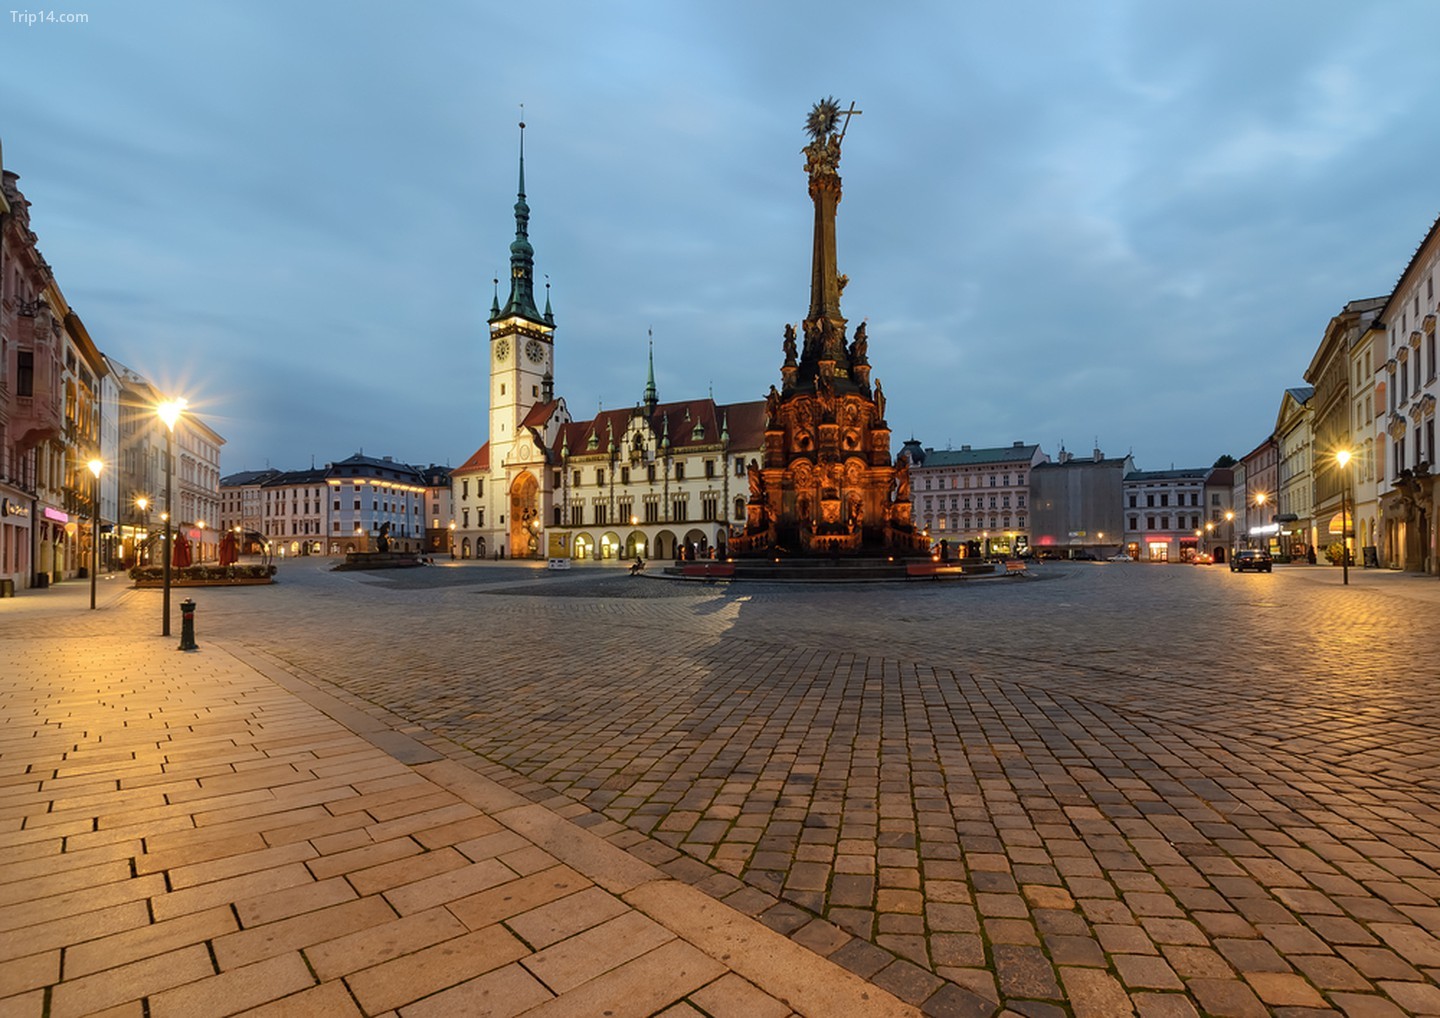 Tòa thị chính và Cột Chúa Ba Ngôi tại quảng trường chính của khu phố cổ Olomouc, Cộng hòa Séc